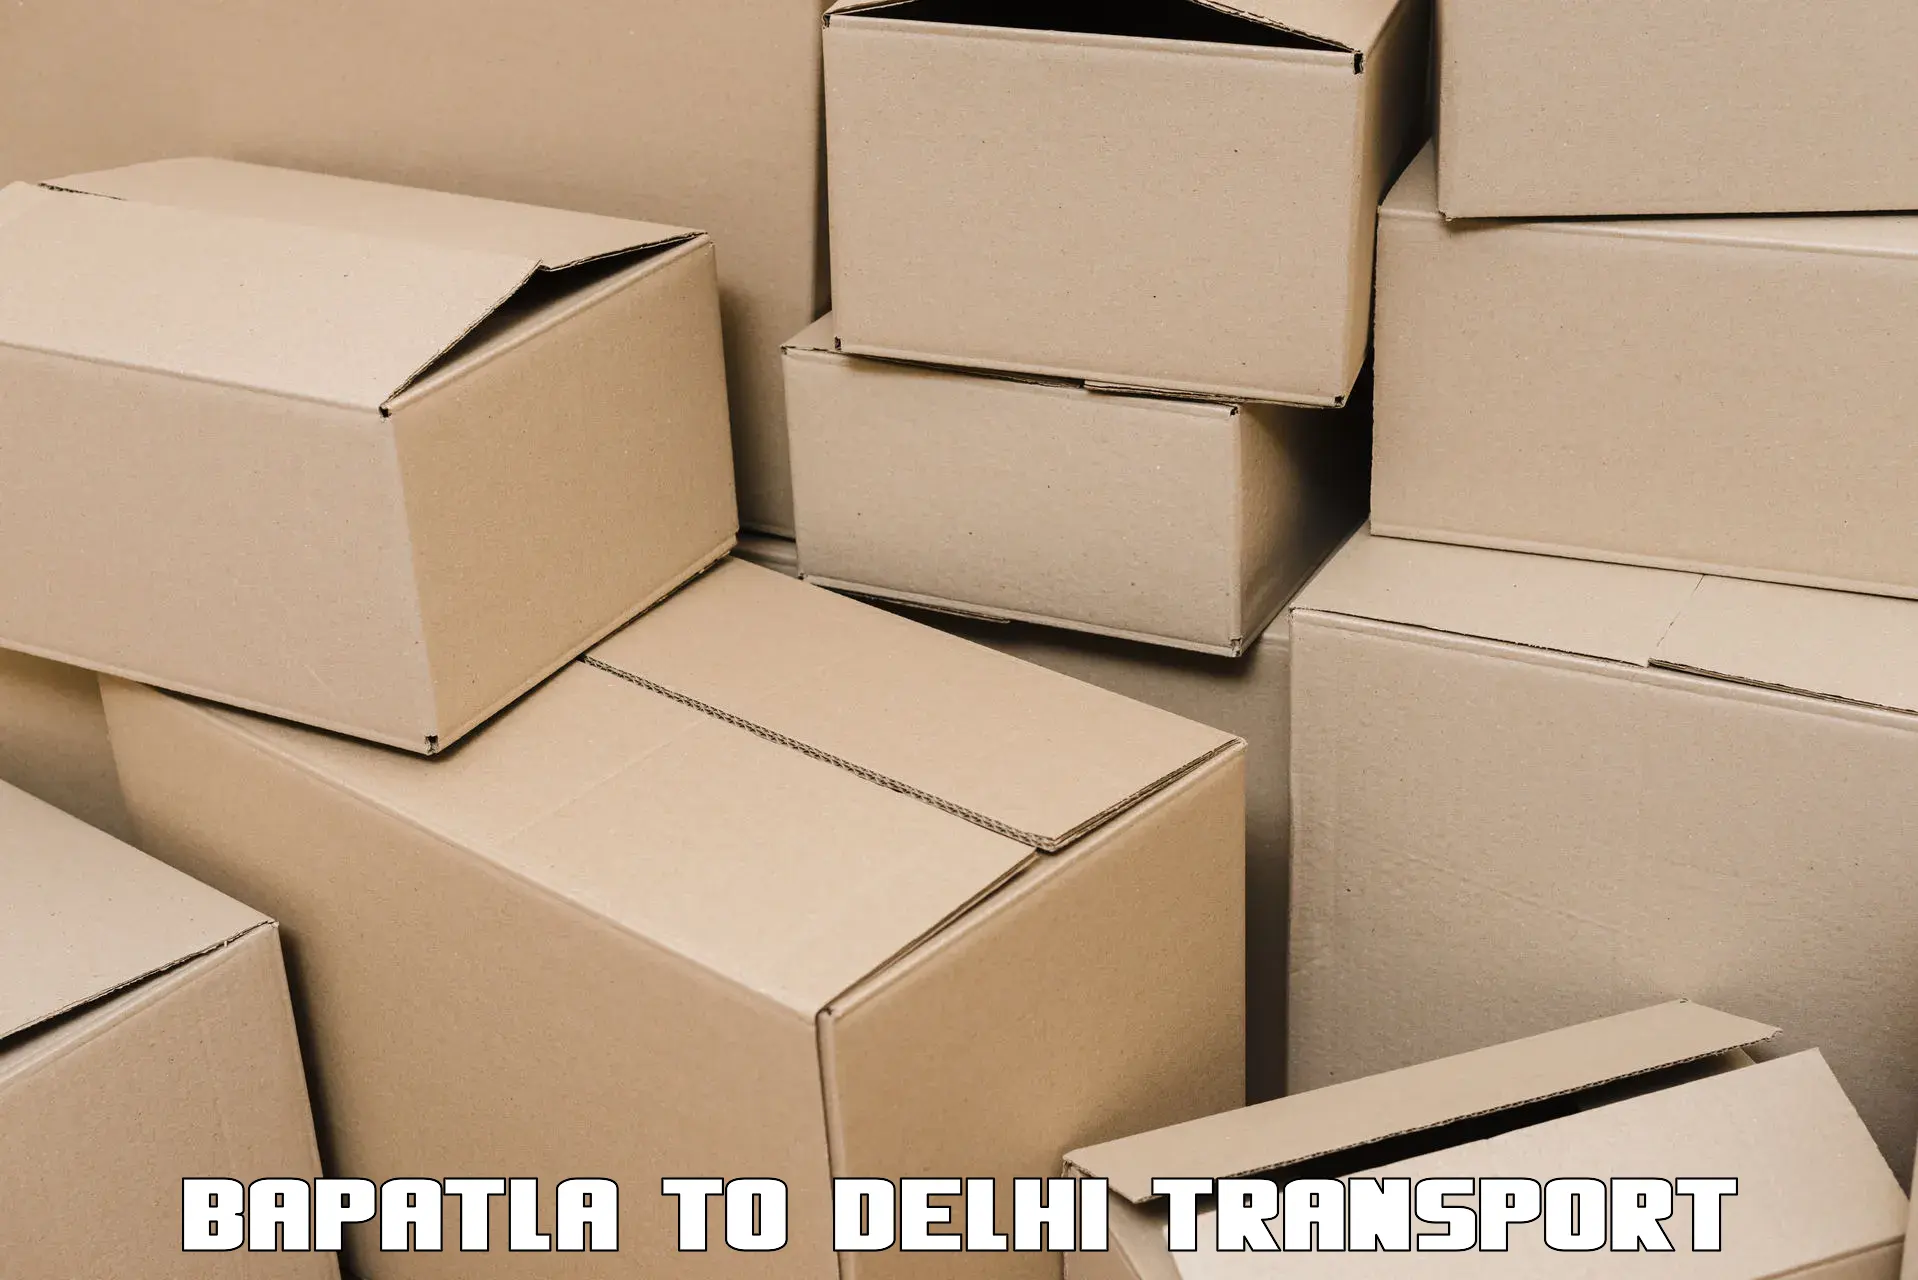 Goods delivery service Bapatla to Kalkaji